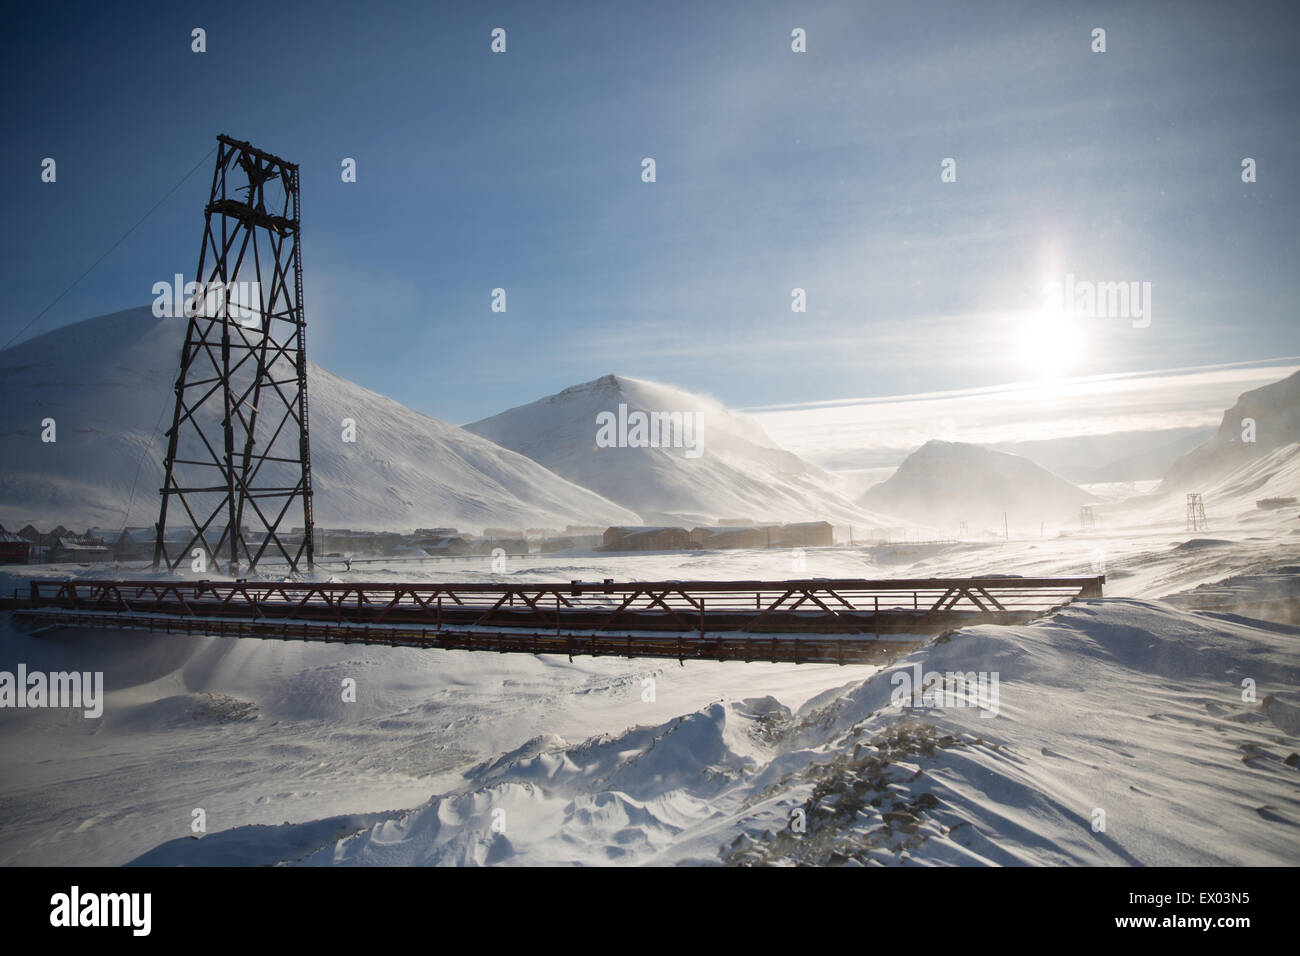 View of bridge in snowy landscape, Longyearbyen, Svalbard, Norway Stock Photo